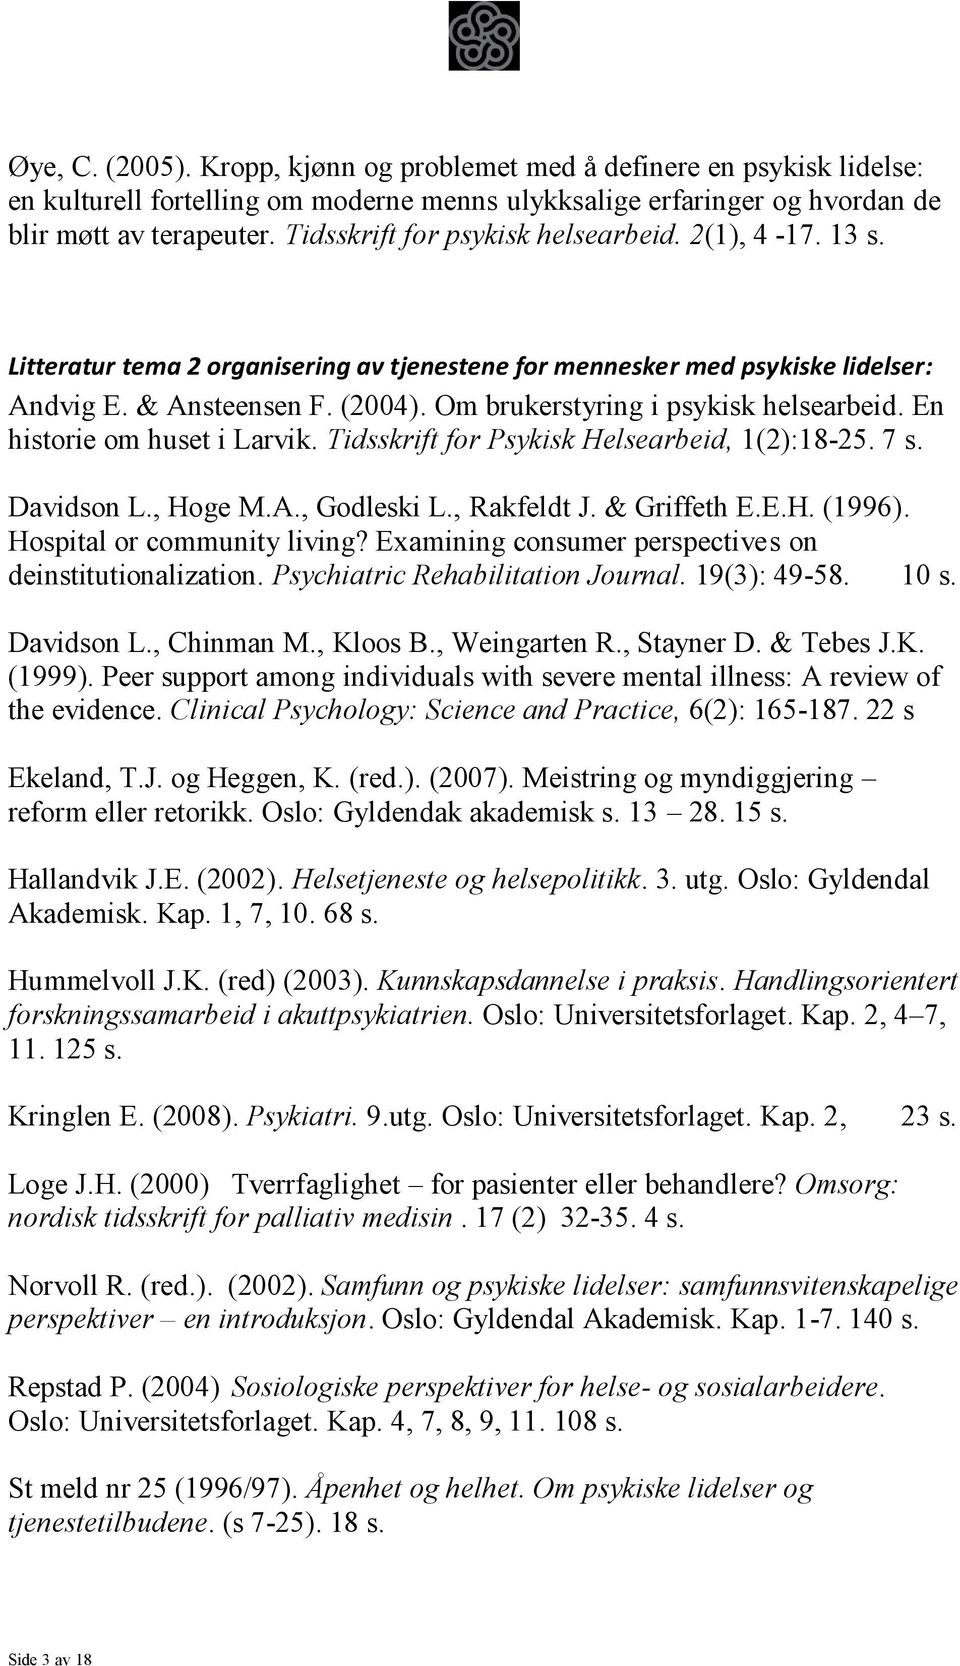 Om brukerstyring i psykisk helsearbeid. En historie om huset i Larvik. Tidsskrift for Psykisk Helsearbeid, 1(2):18-25. 7 s. Davidson L., Hoge M.A., Godleski L., Rakfeldt J. & Griffeth E.E.H. (1996).